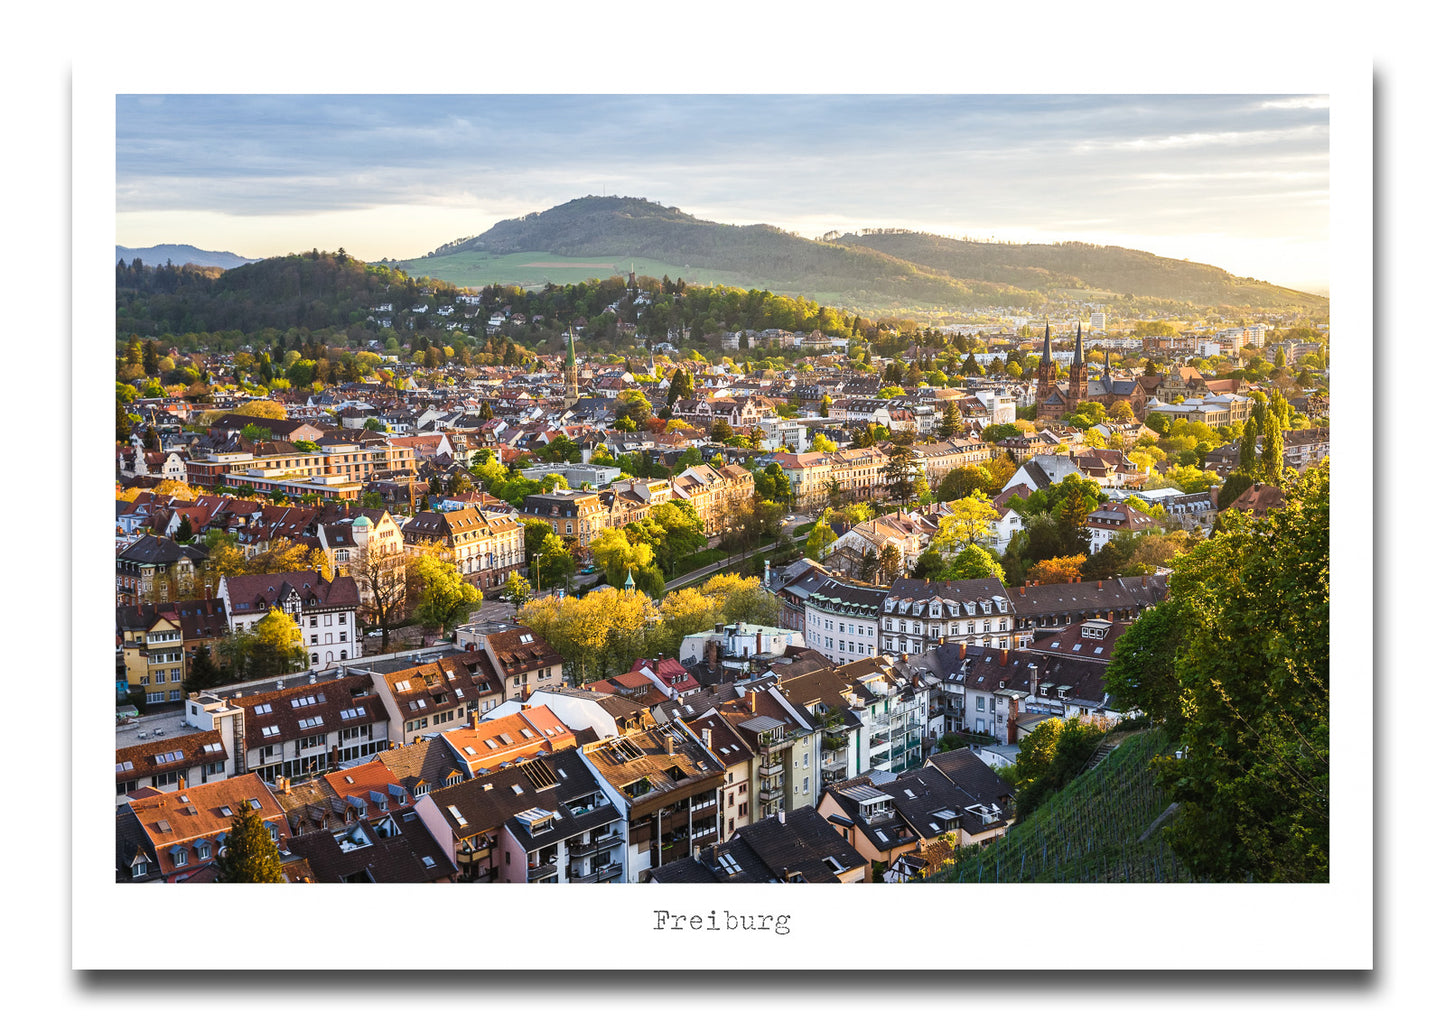 Freiburg Poster